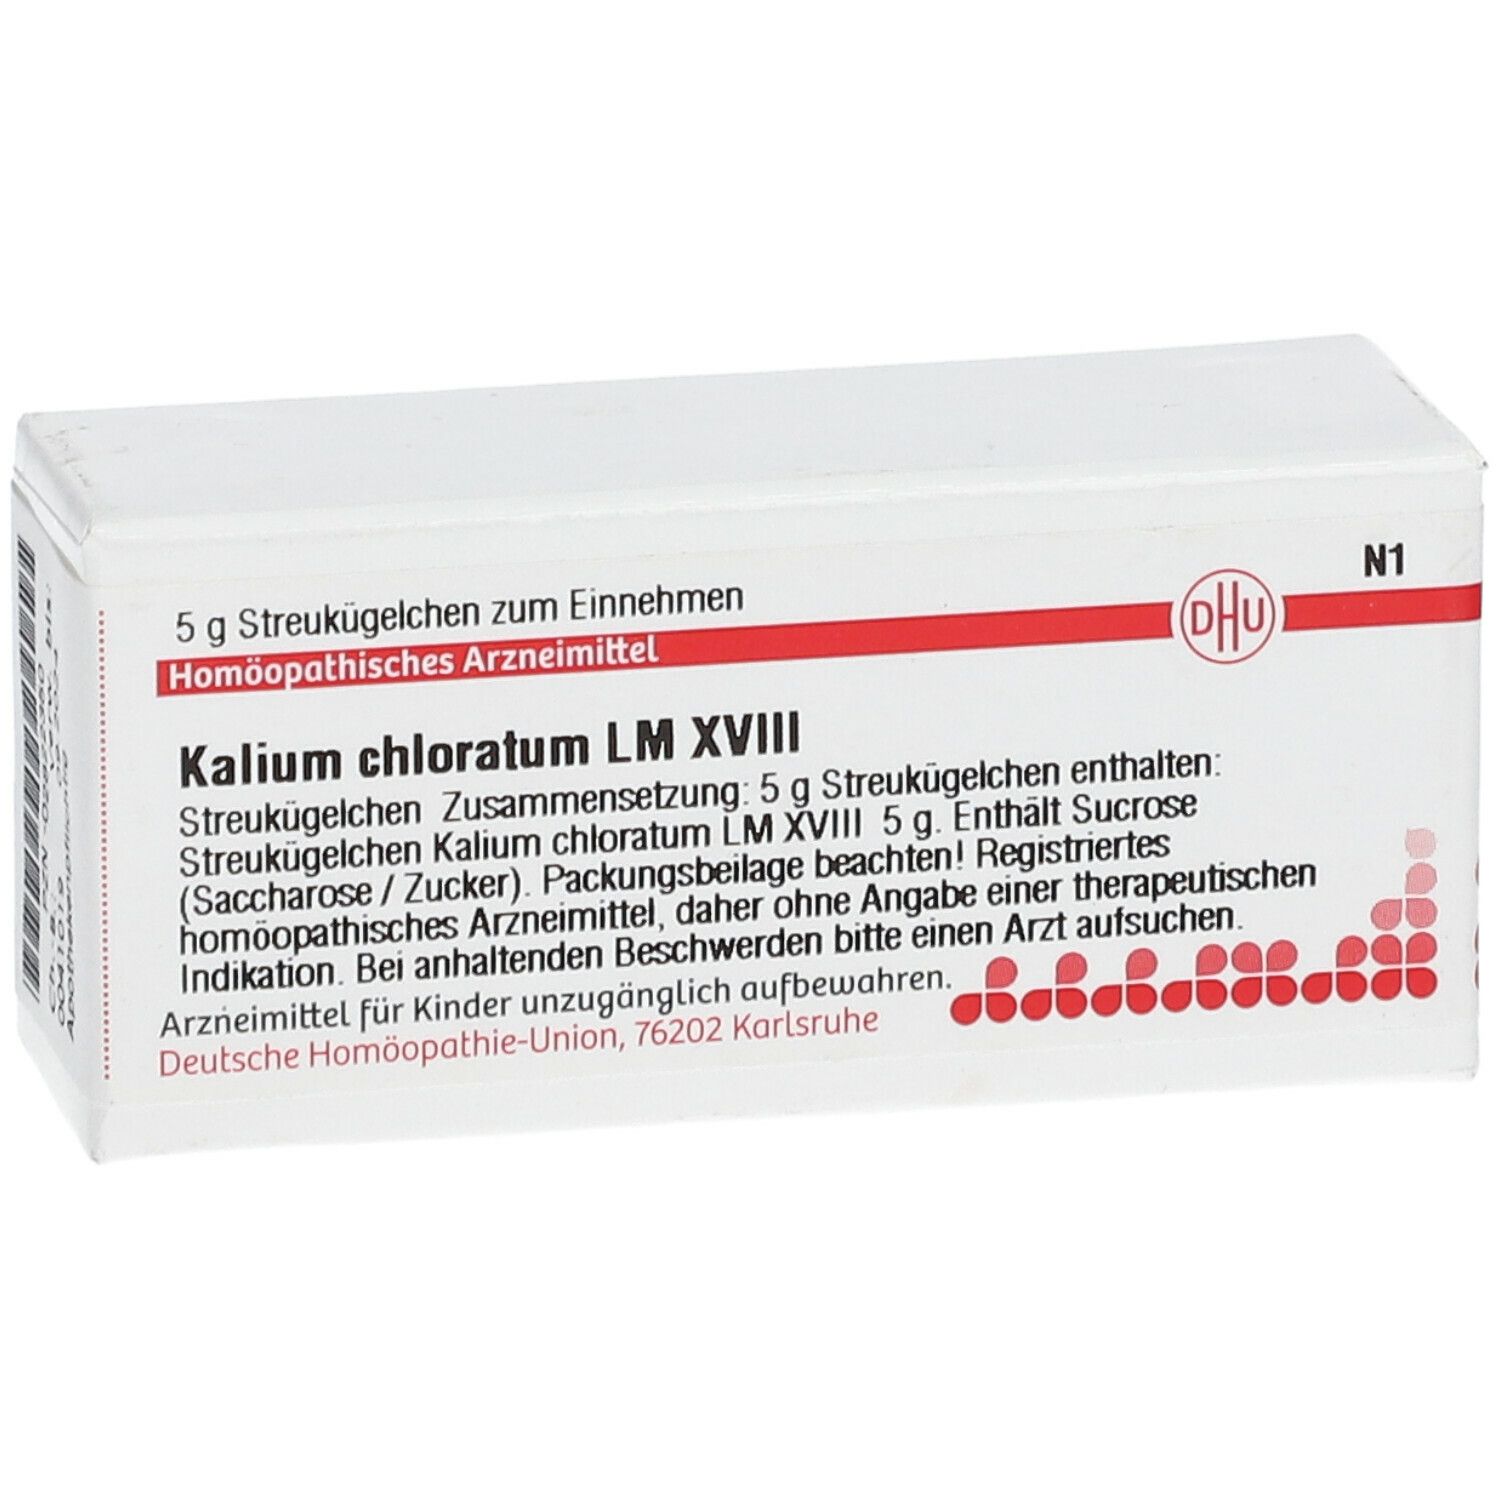 DHU Kalium Chloratum LM XVIII